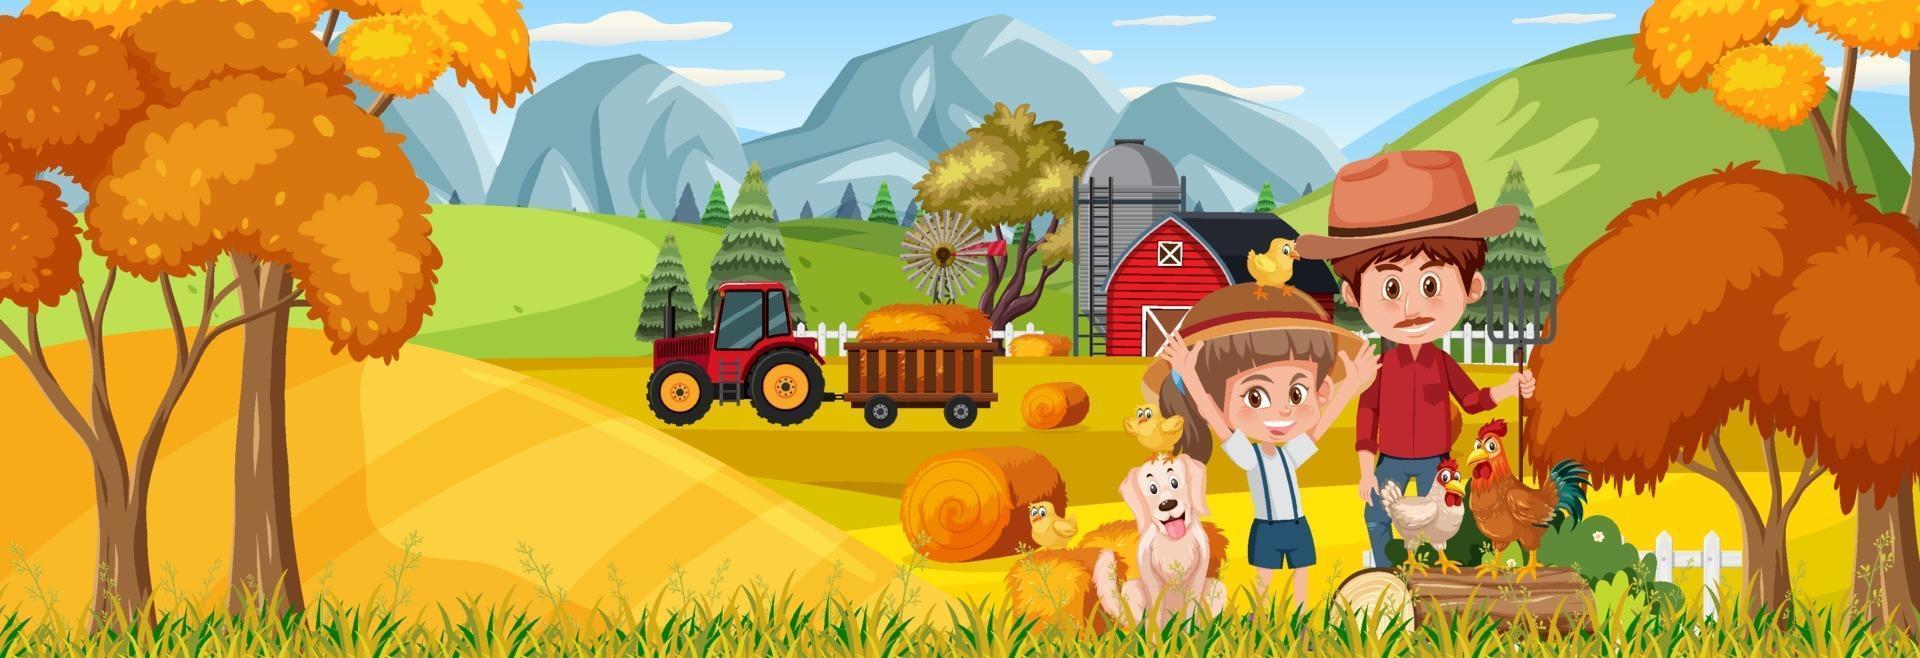 scène de paysage horizontal de ferme avec des enfants d'agriculteurs vecteur